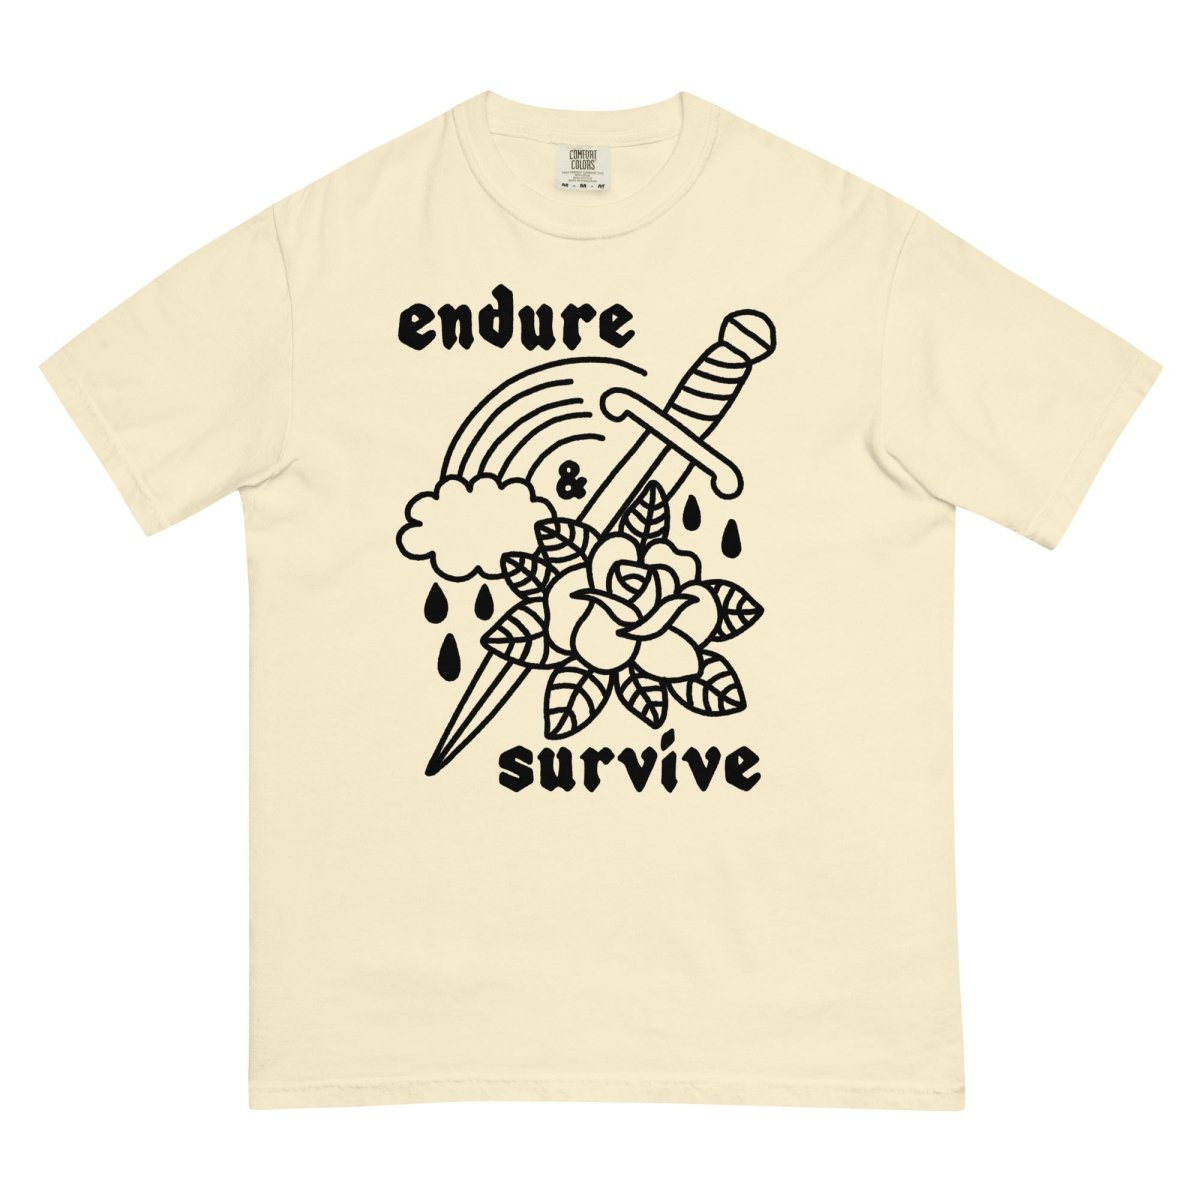 endure & survive tshirt - Pretty Bad Co.